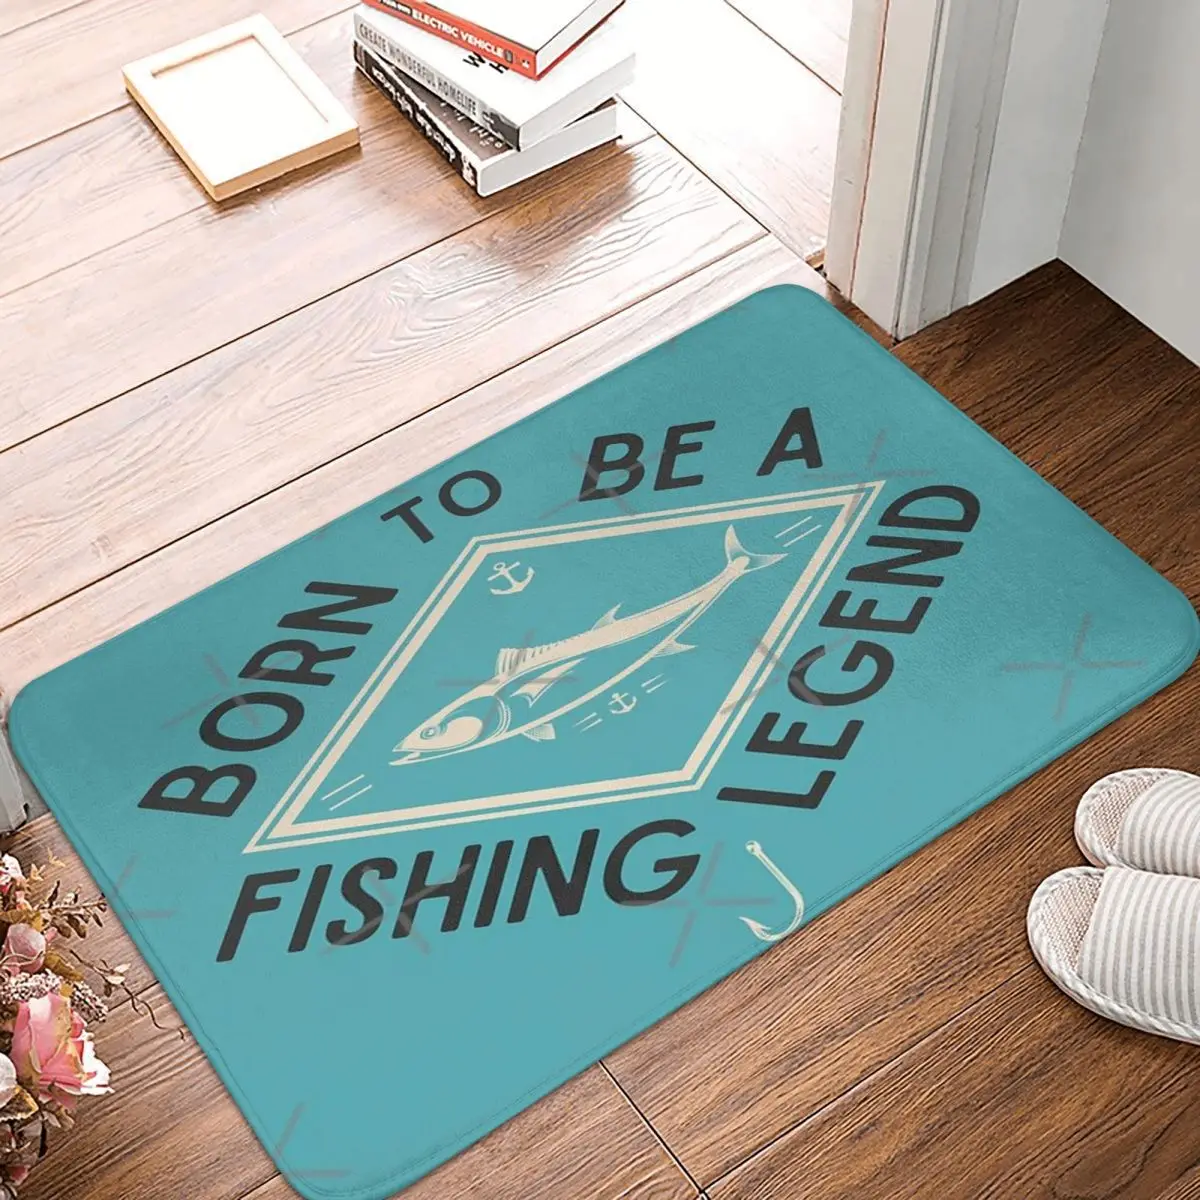 

Коврик Born To Be A Fishing Legend 40x60 см, Полиэстеровые коврики, современные противоскользящие подарки